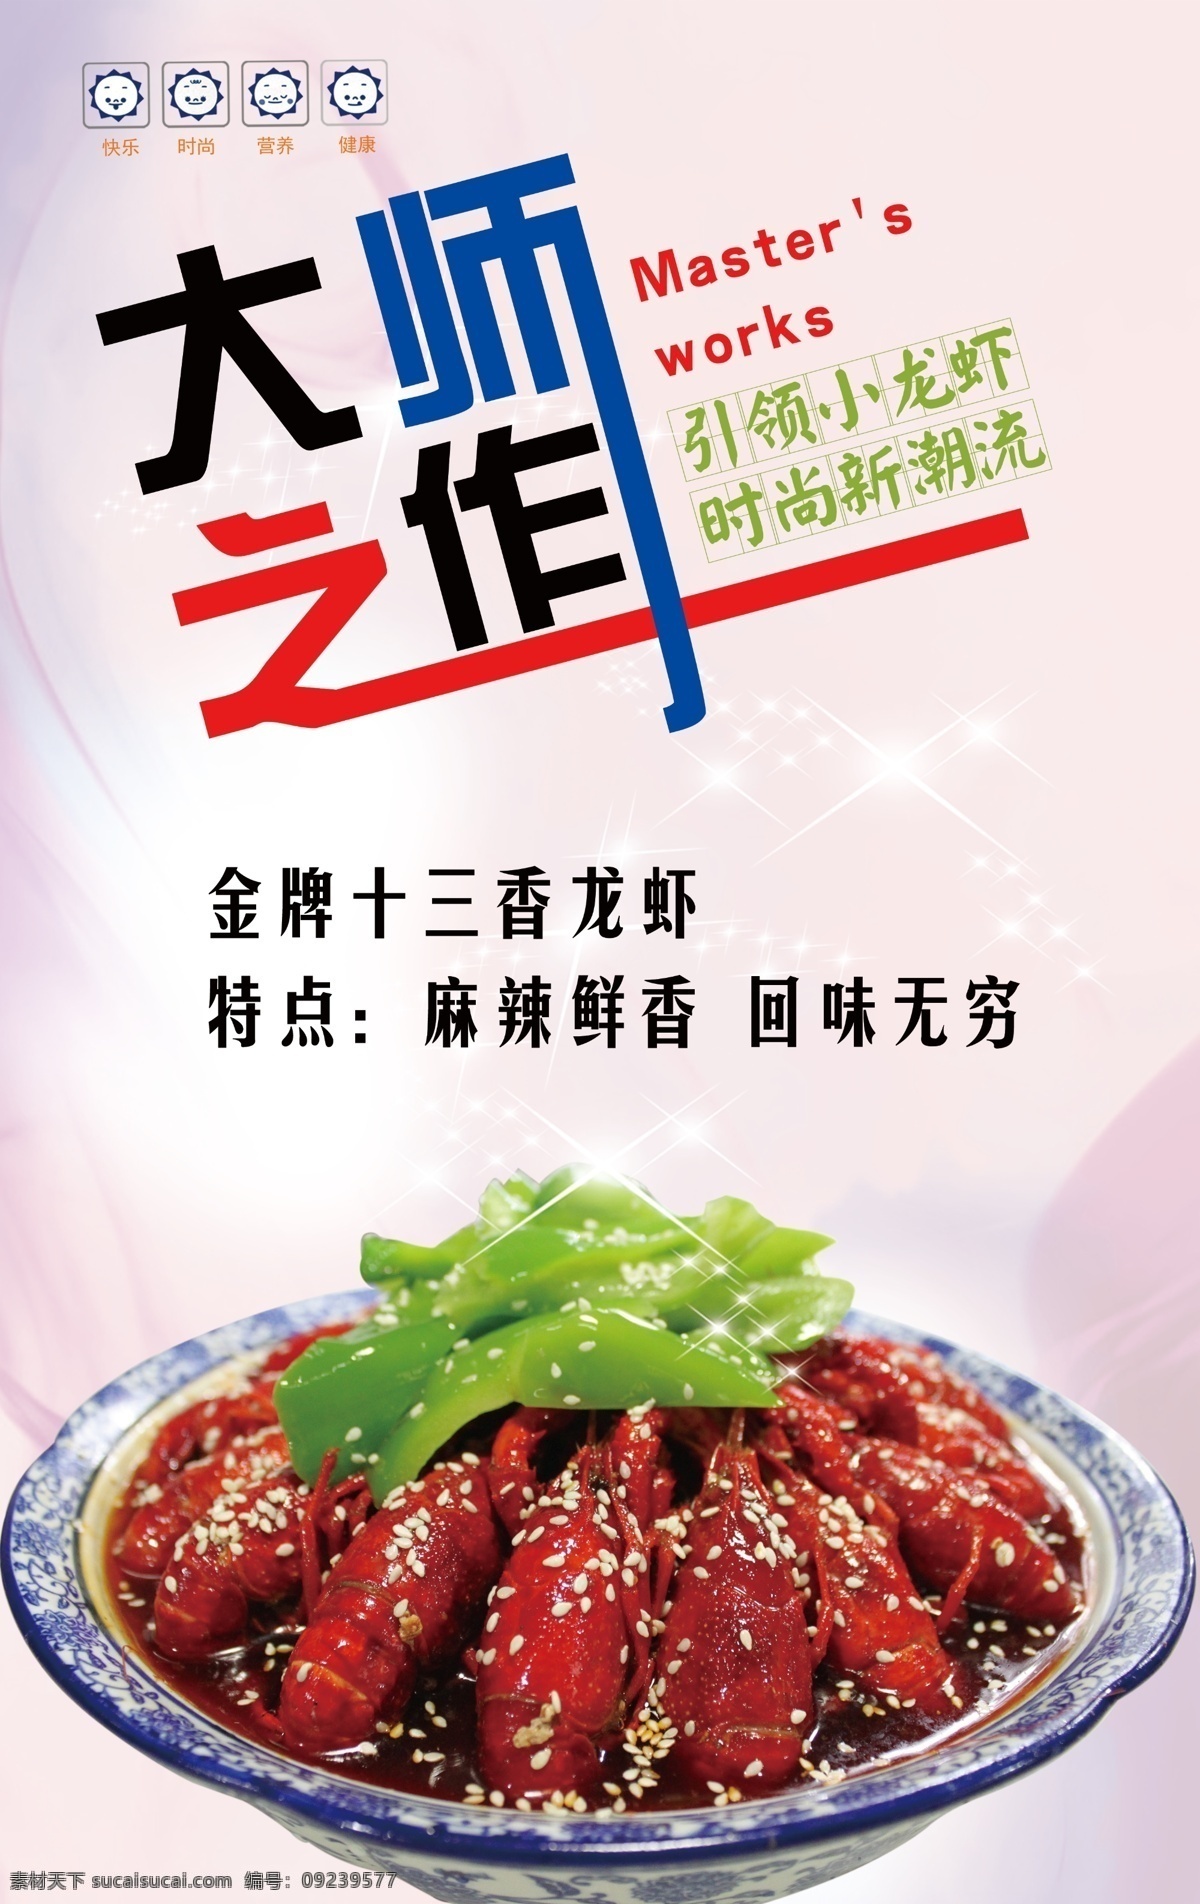 龙虾广告 龙虾 大师 广告 十三香 美味 好吃 白色